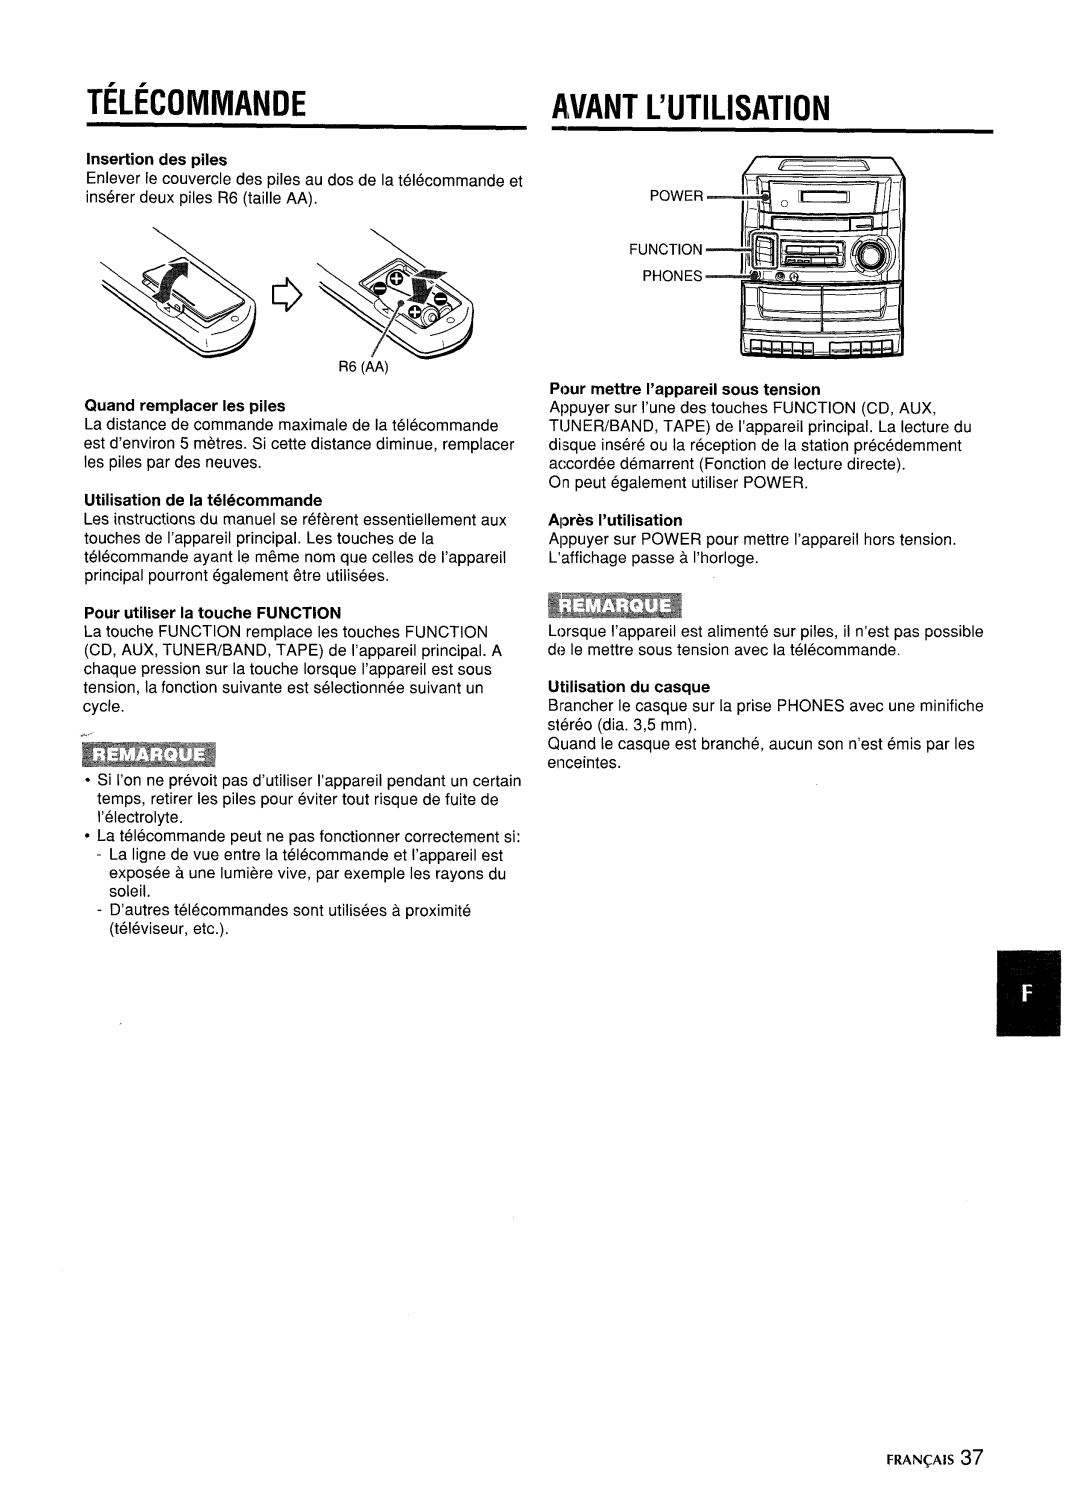 Aiwa CA-DW635 manual Telecommande, Avant L’Utilisation, Insertion des piles, Quand remplacer les piles, Apres I’utilisation 